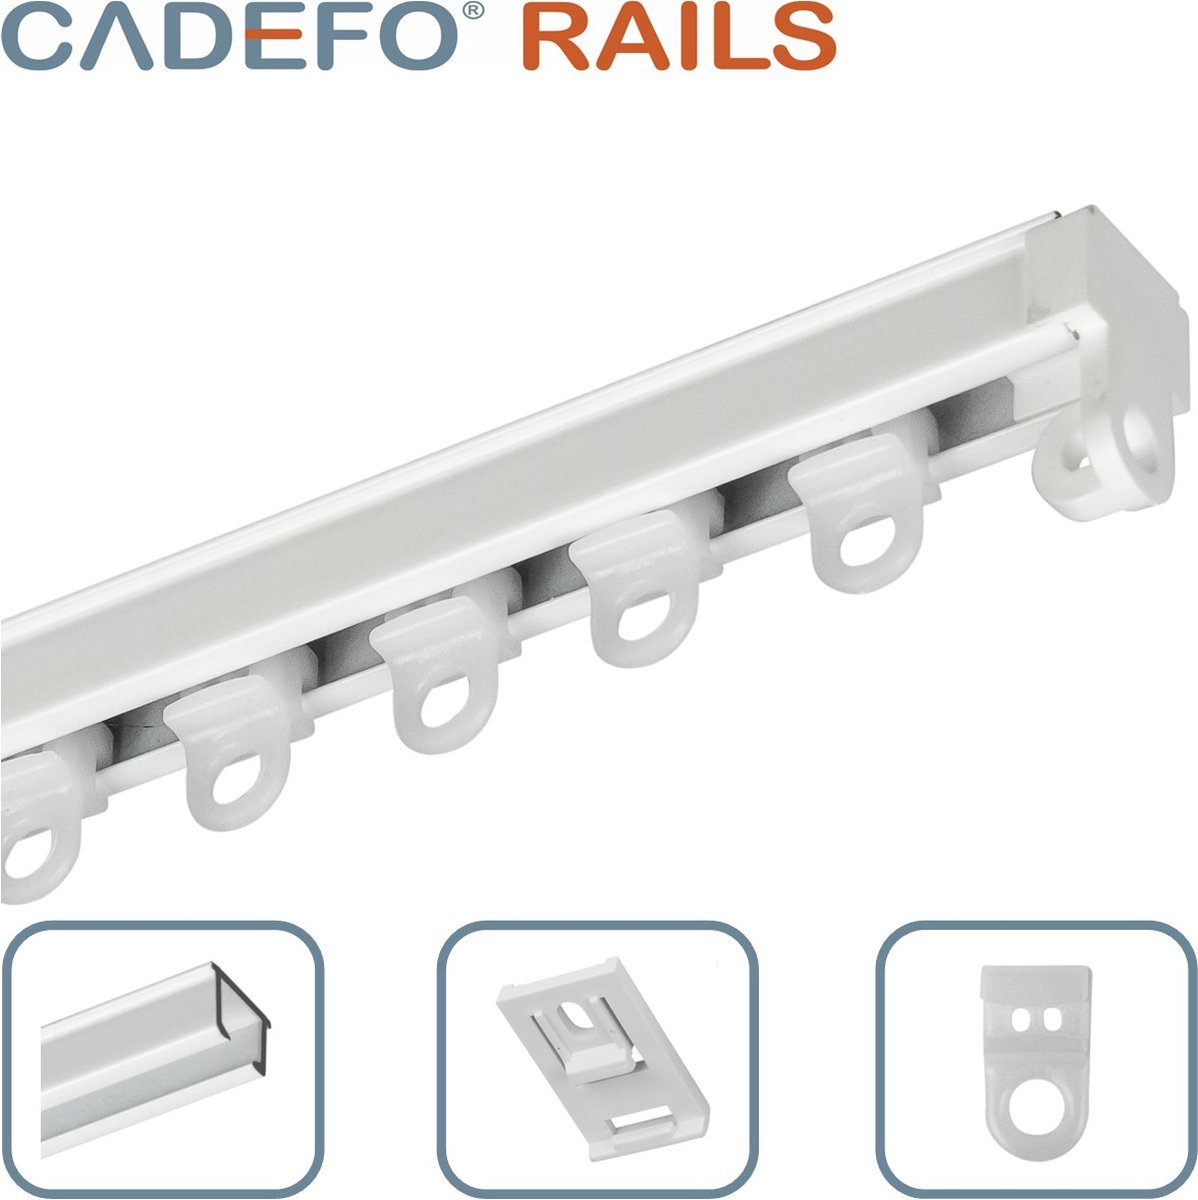 CADEFO RAILS (151 - 200 cm) Gordijnrails - Compleet op maat! - UIT 1 STUK - Leverbaar tot 6 meter - Plafondbevestiging - Lengte 189 cm